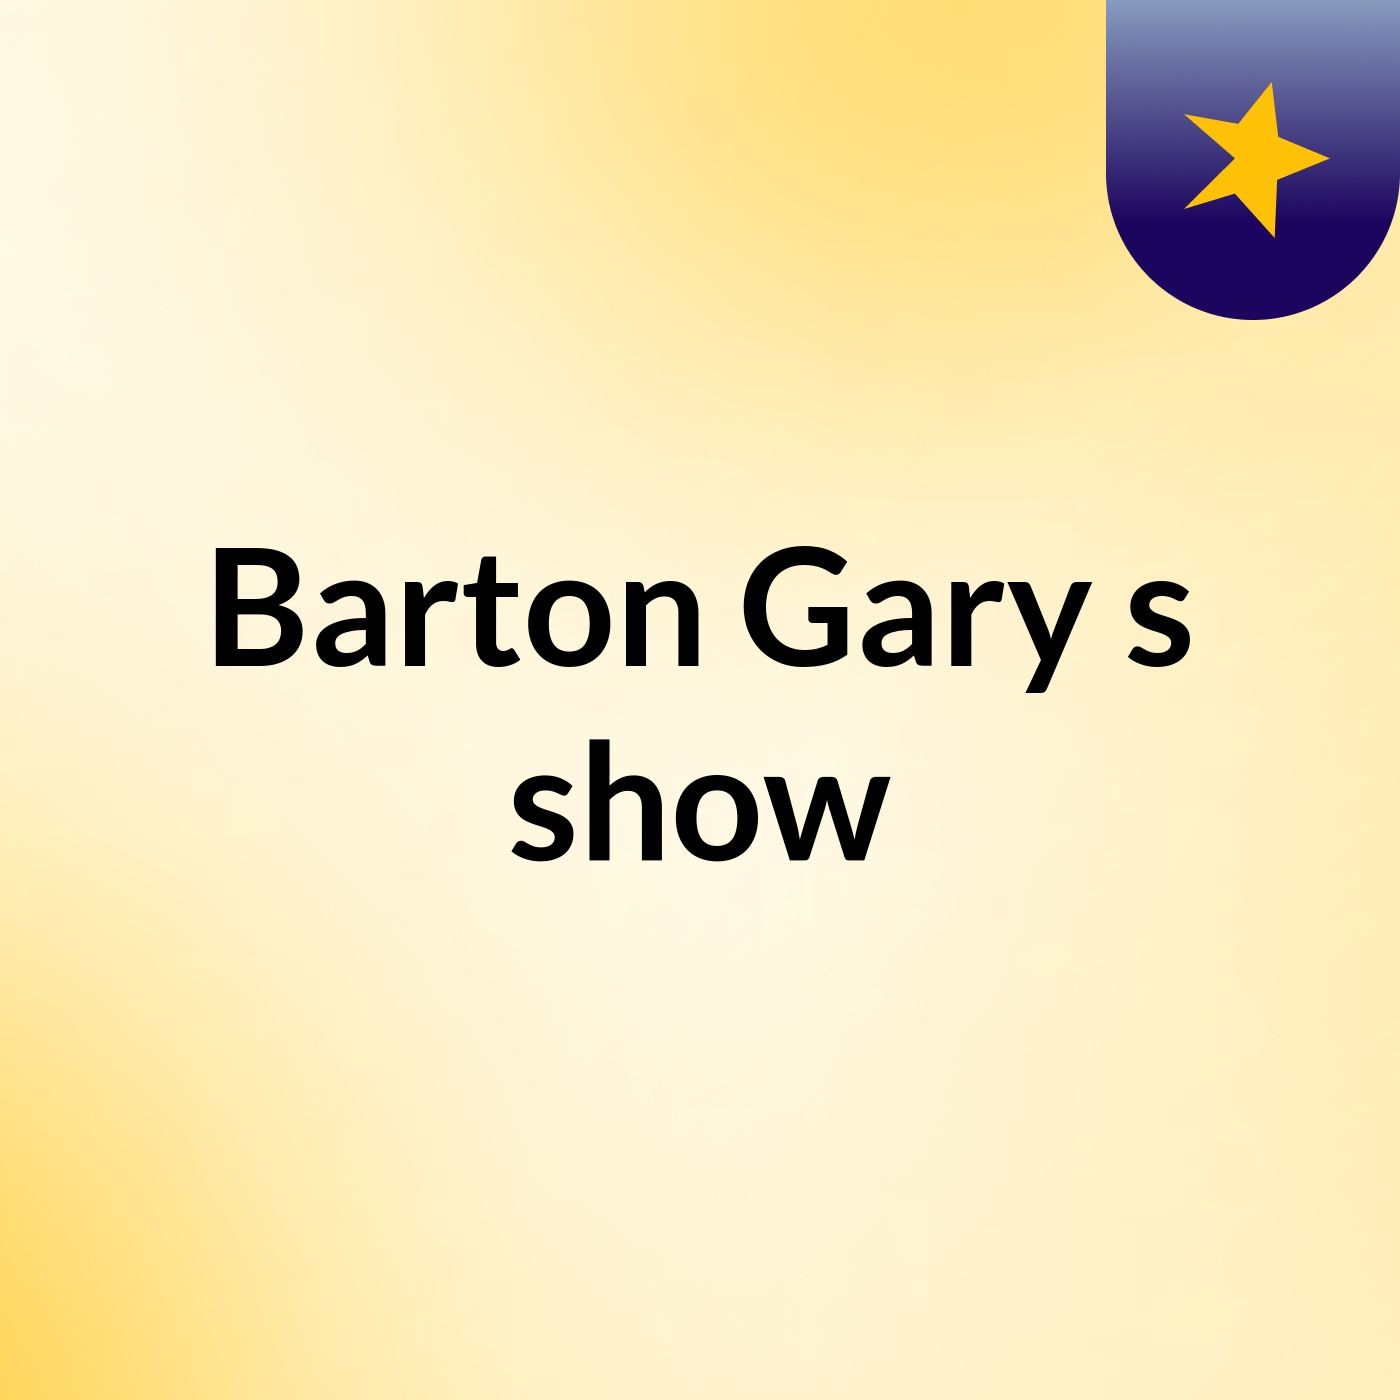 Episode 2 - Barton Gary's show